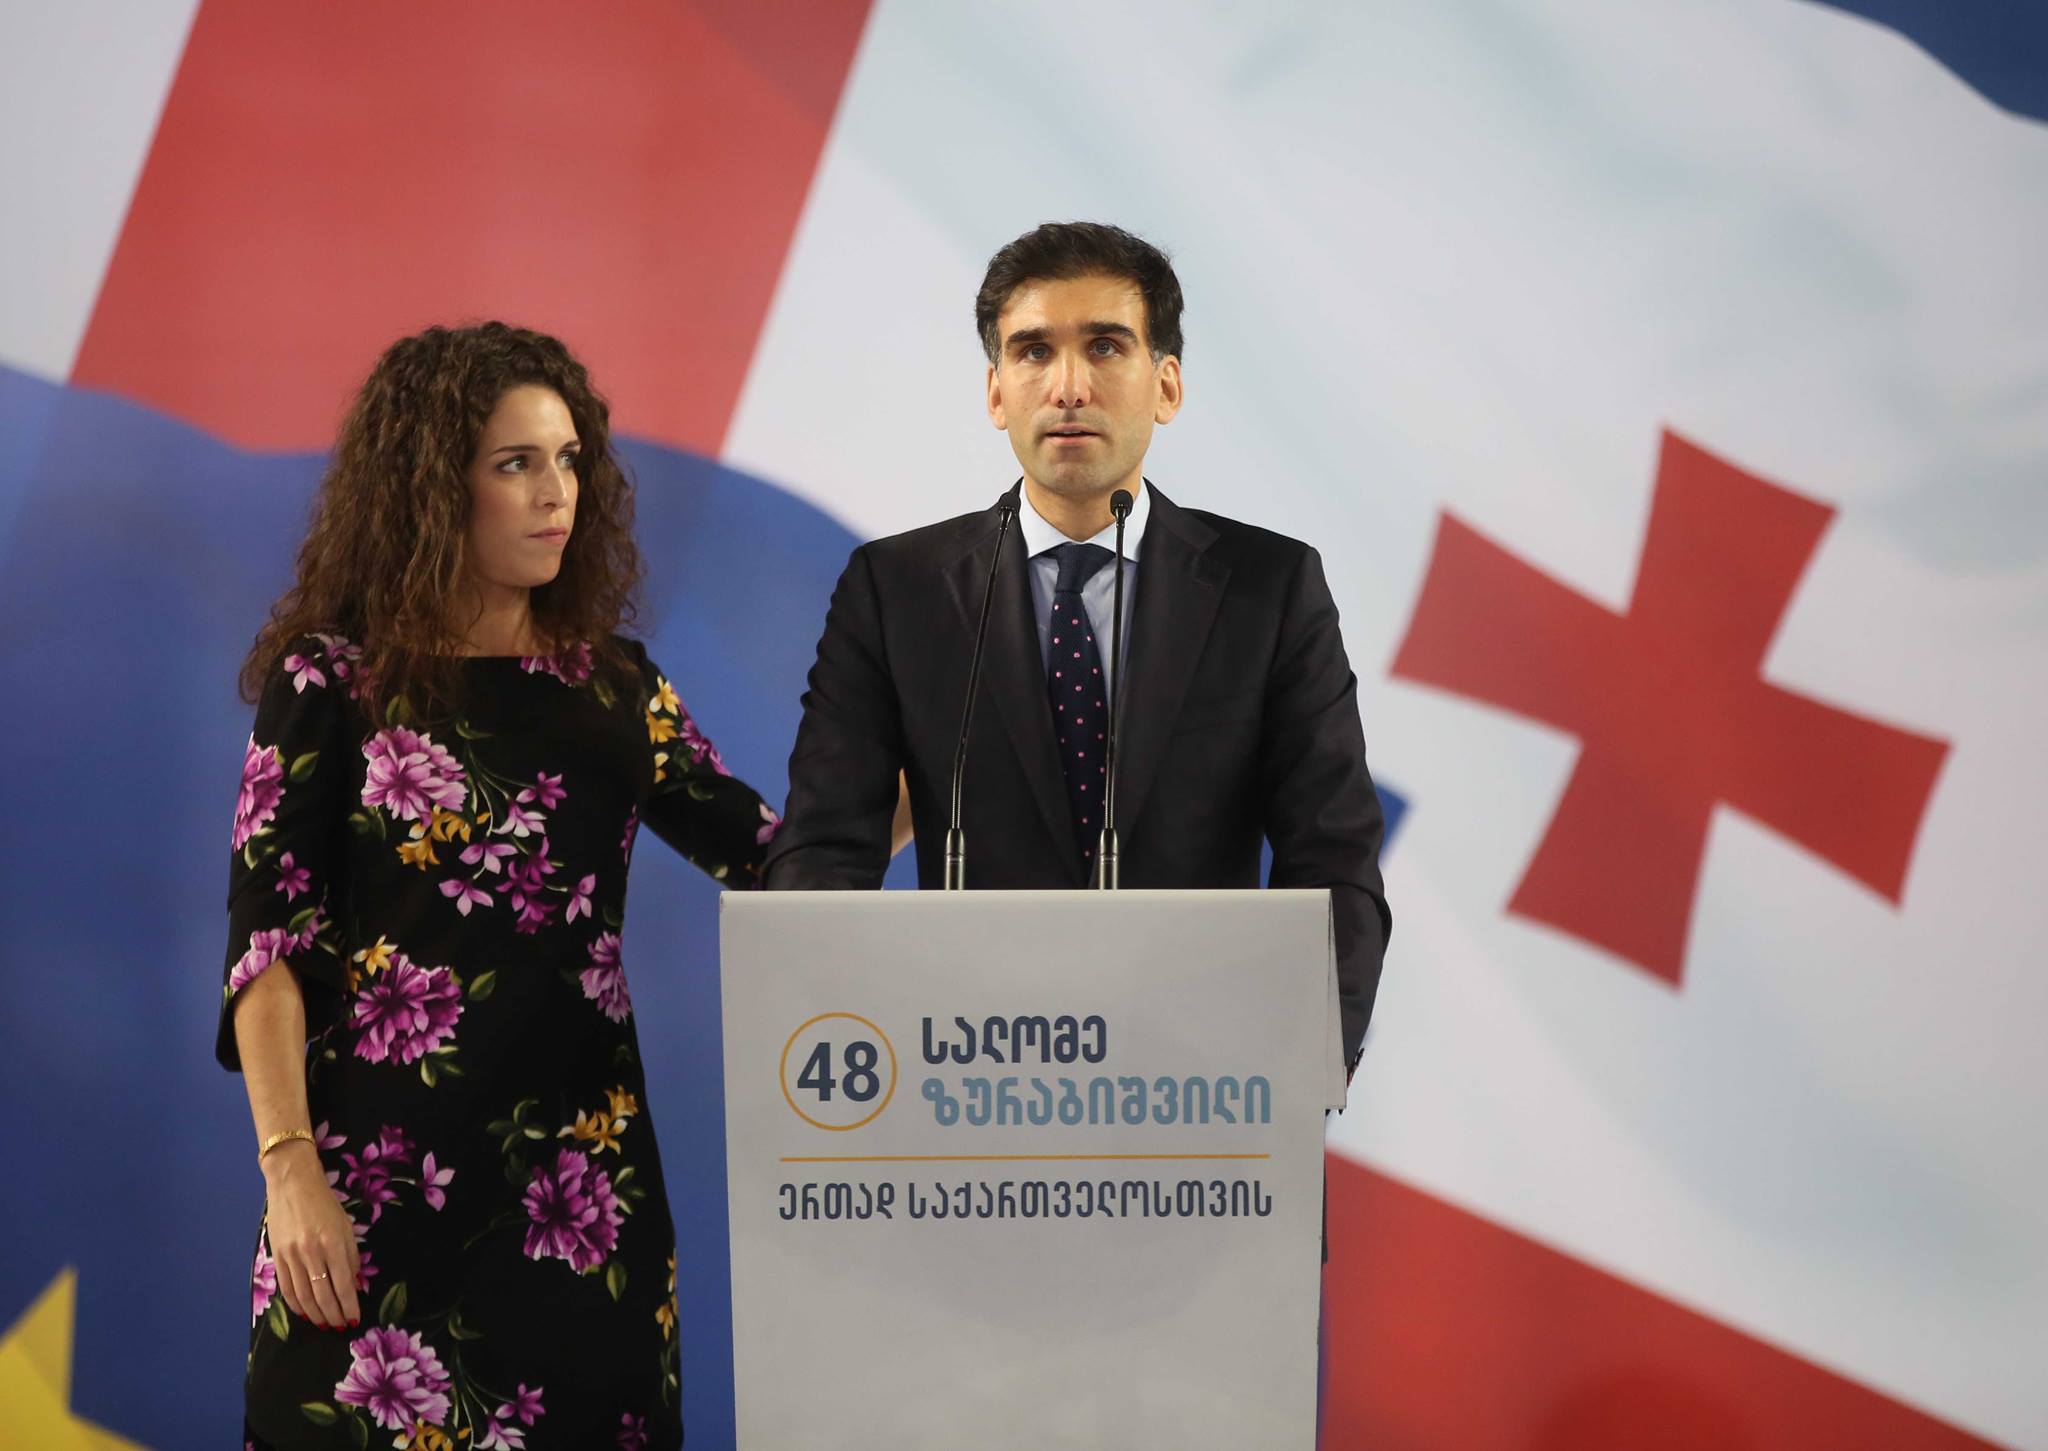 Сын Саломе Зурабишвили стал сотрудником администрации президента Франции